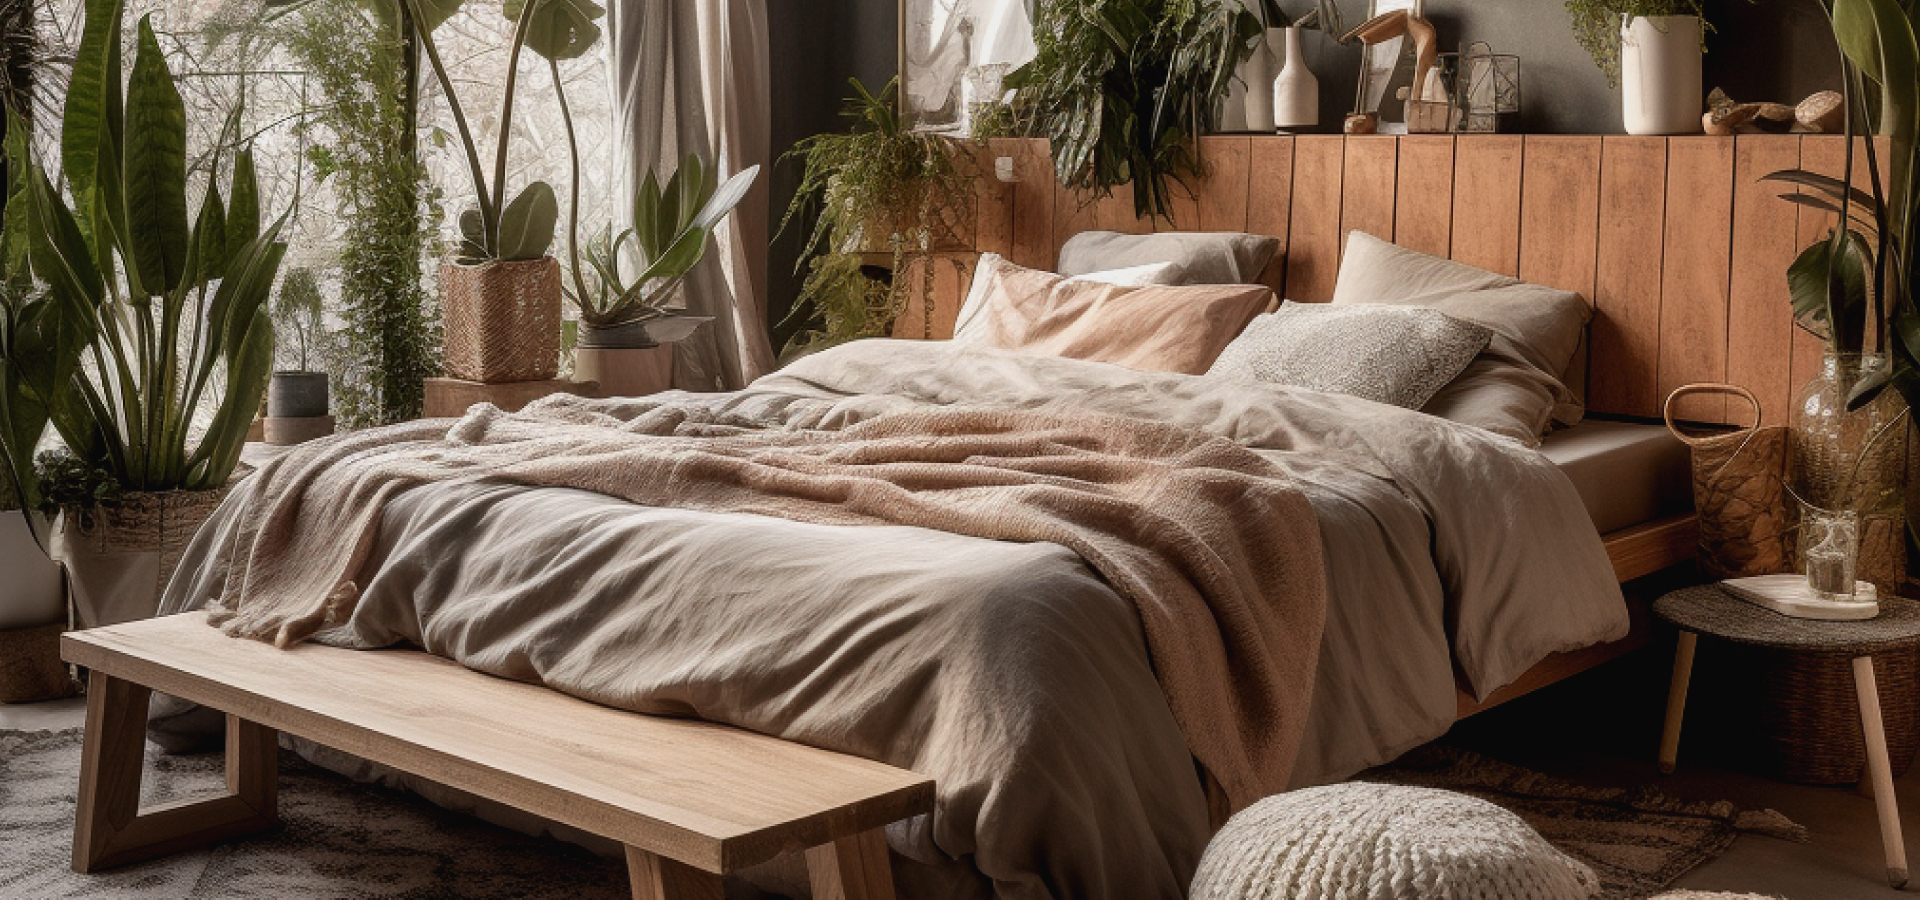 Sypialnia w klimacie boho z ogromną ilością roślin wokół. Przed łóżkiem drewniana ława.